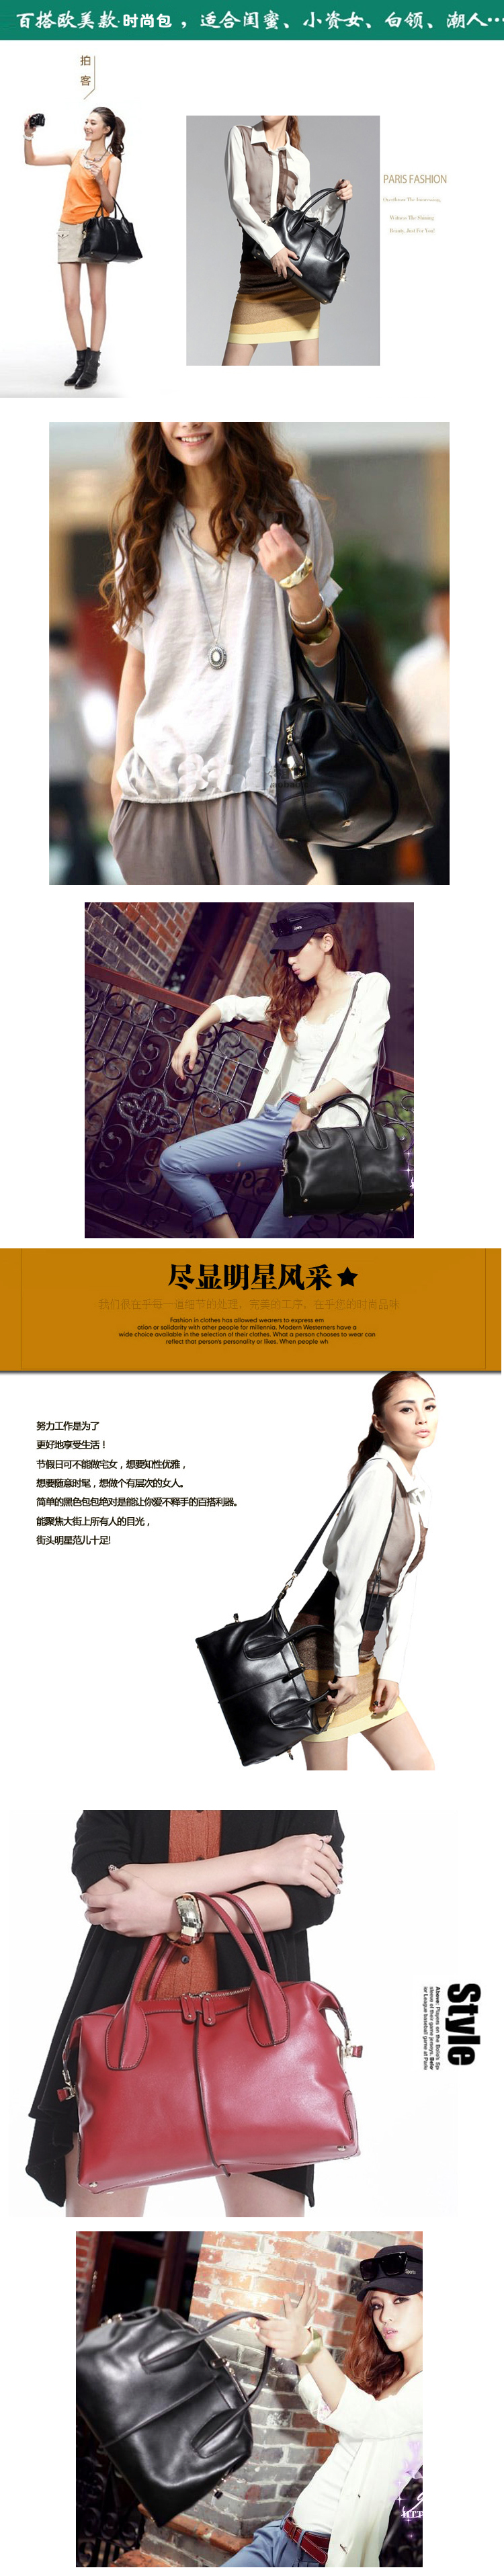 Mssefn 2014最新款 手提斜跨女包欧美时尚女士纳帕皮复古大包包3219